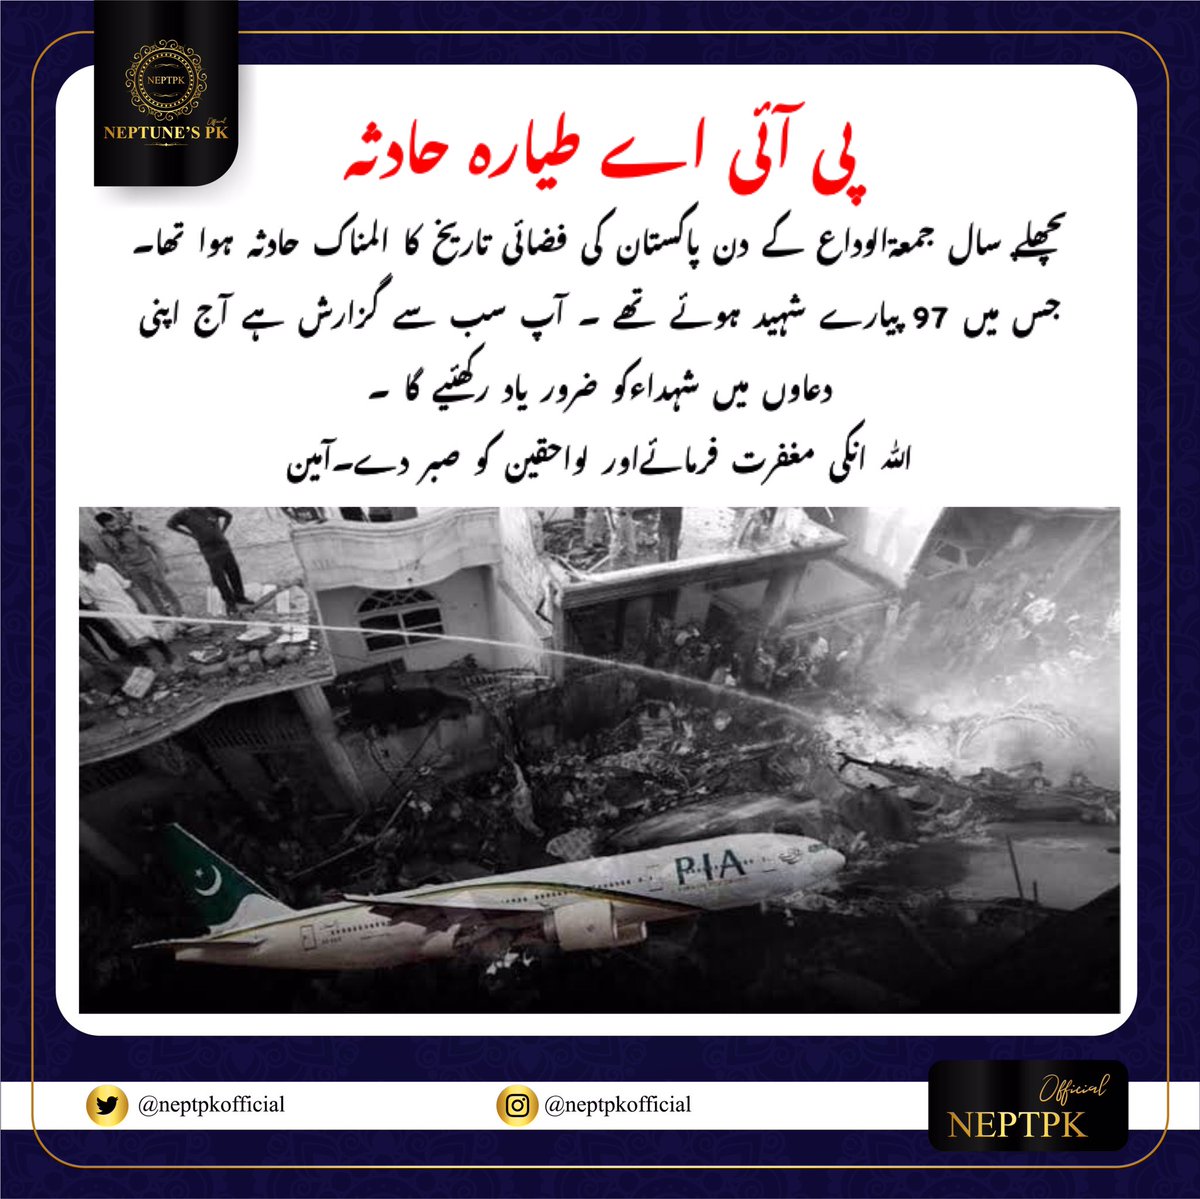 پی آئی اے کراچی طیارہ حادثہ 💔

#neptpkofficial 
#piaplanecrash #karachiplanecrash #pia #dua #maghfirah #a320 #planecrash #jummatulwida #remembering #karachi #pakistan